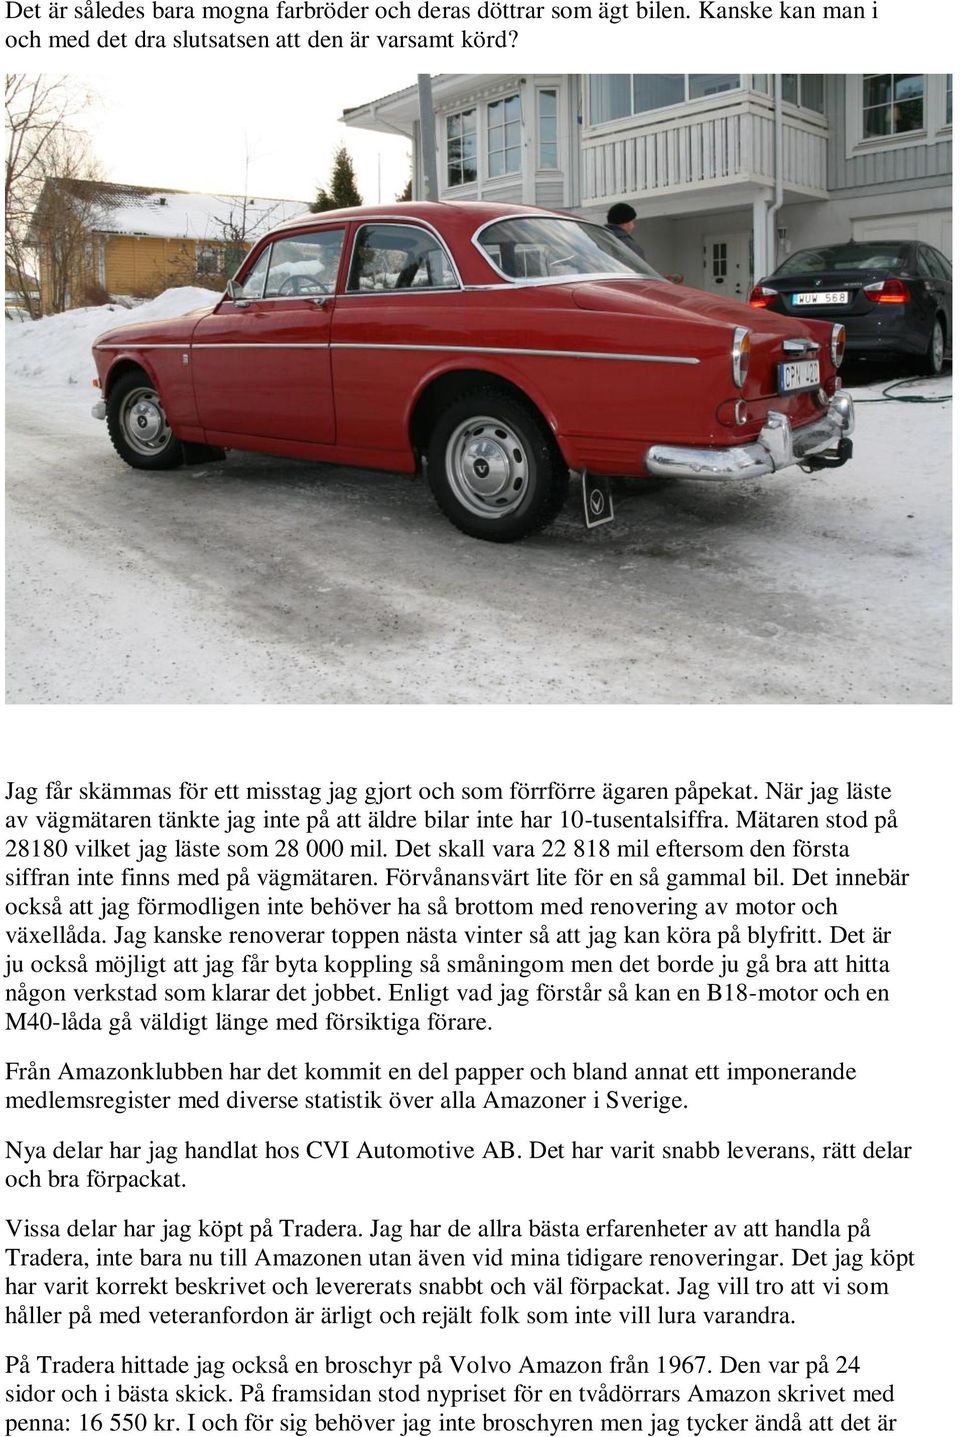 Volvo Amazon 1967 vad hände sedan? - PDF Gratis nedladdning